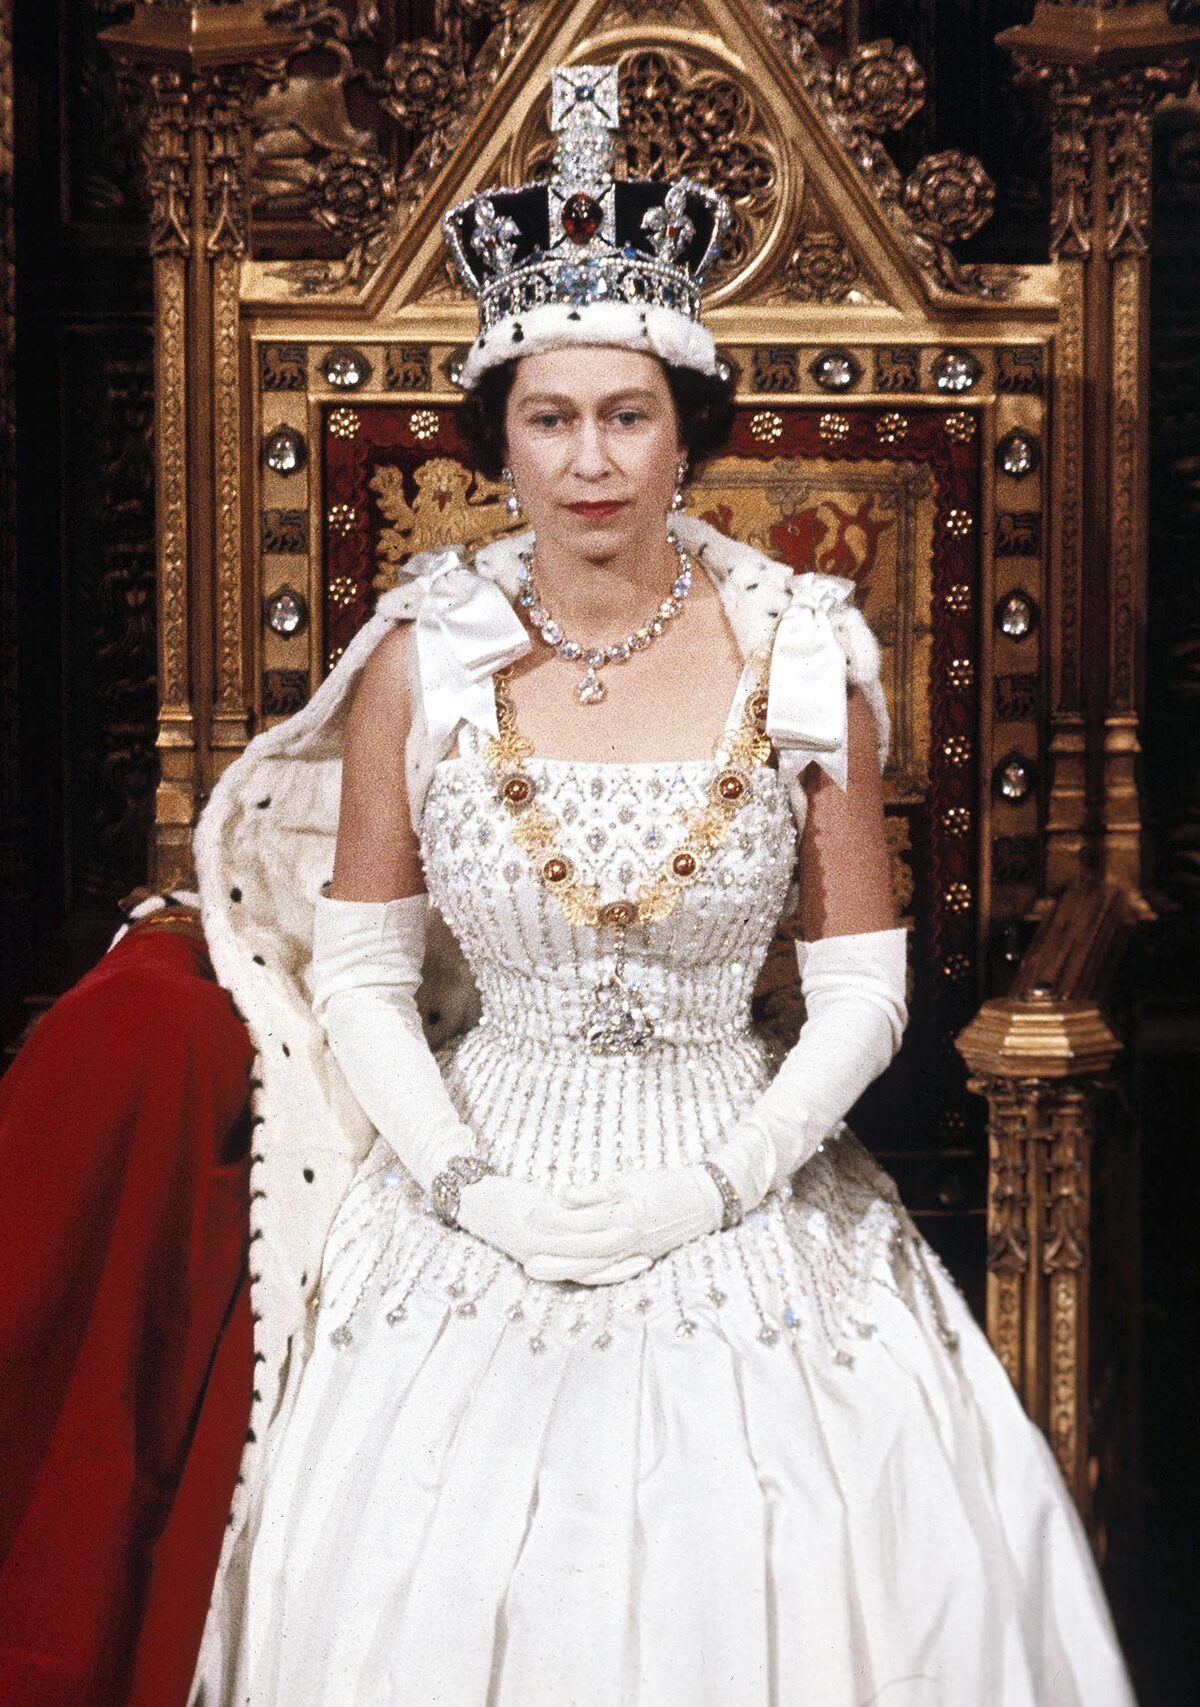 สมเด็จพระราชินีนาถเอลิซาเบธที่ 2 ในวันเปิดสมัยประชุมรัฐสภาในกรุงลอนดอน เมื่อเดือนเมษายน ปี 2509 (เอพี)